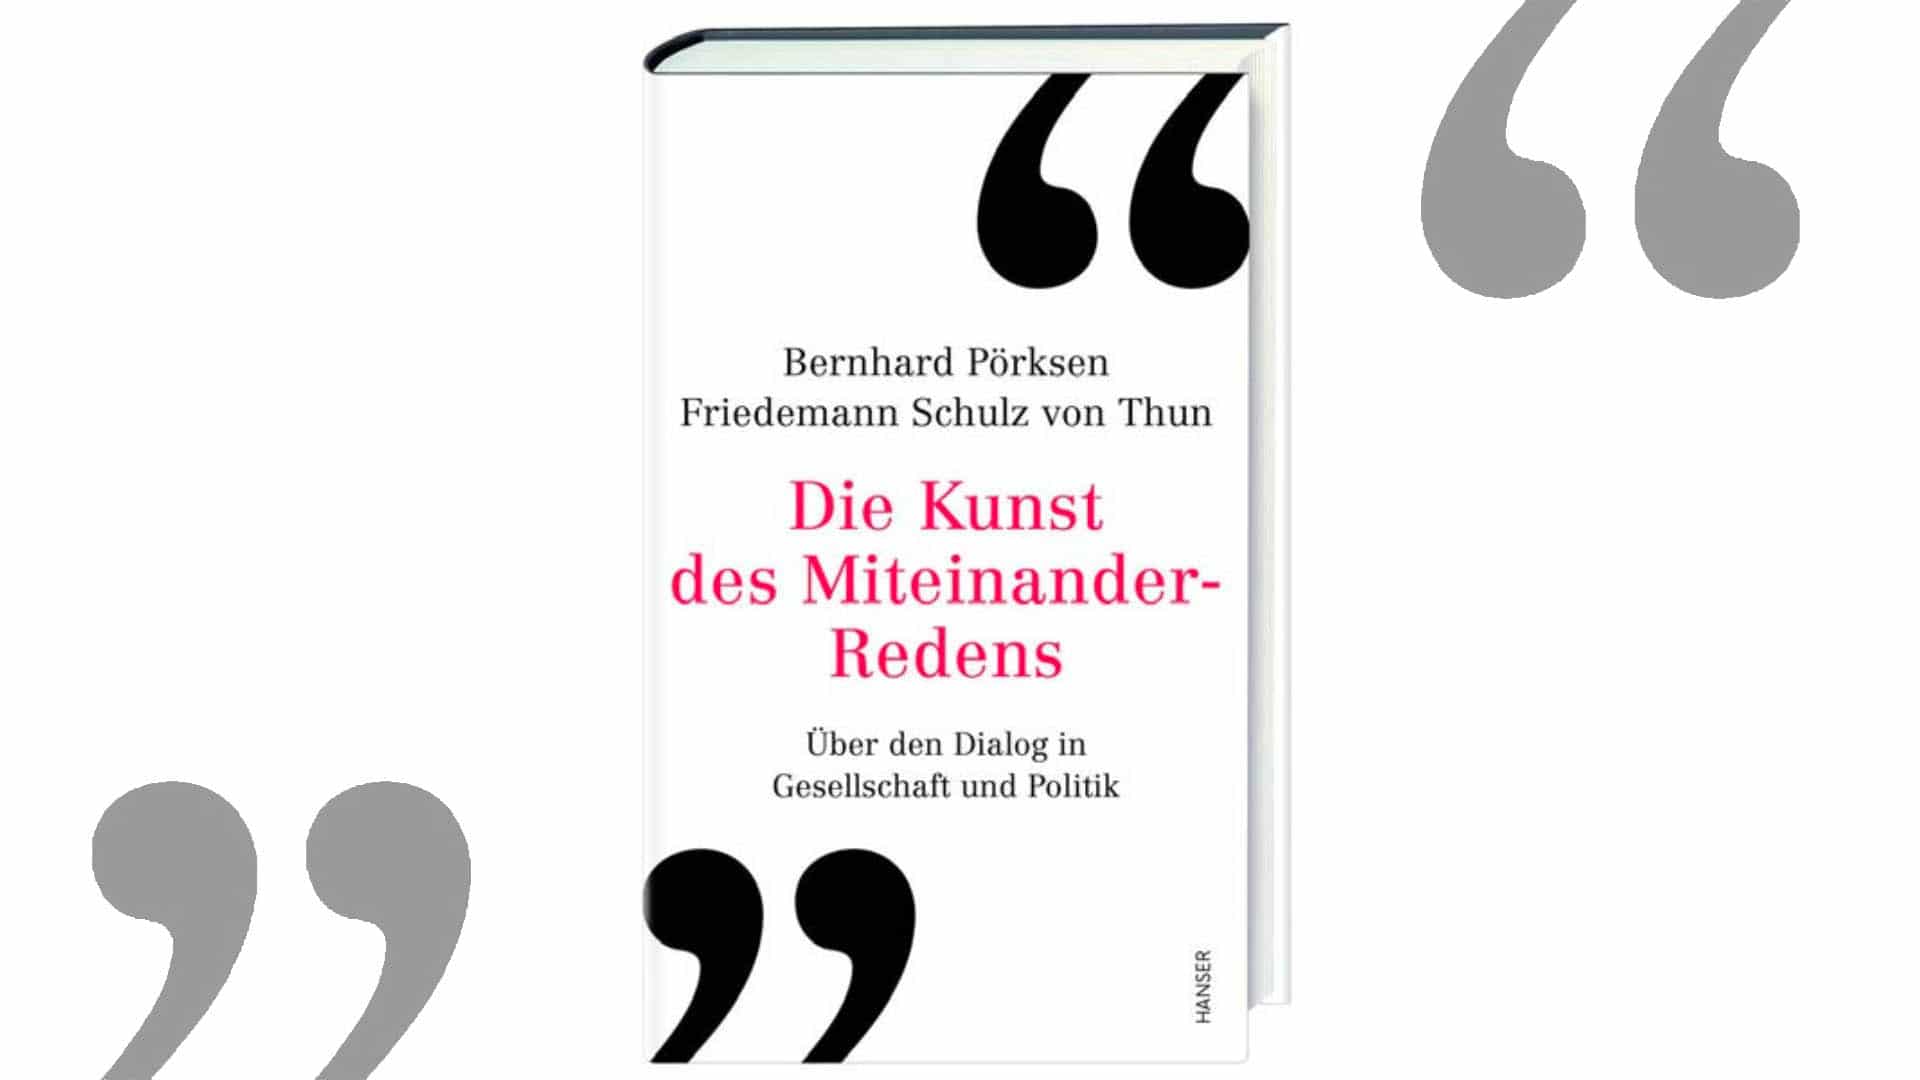 „Über den Dialog in Gesellschaft und Politik“ sprechen die beiden Medienexperten Bernhard Pörksen und Friedemann Schulz von Thun in ihrem gemeinsamen Buch